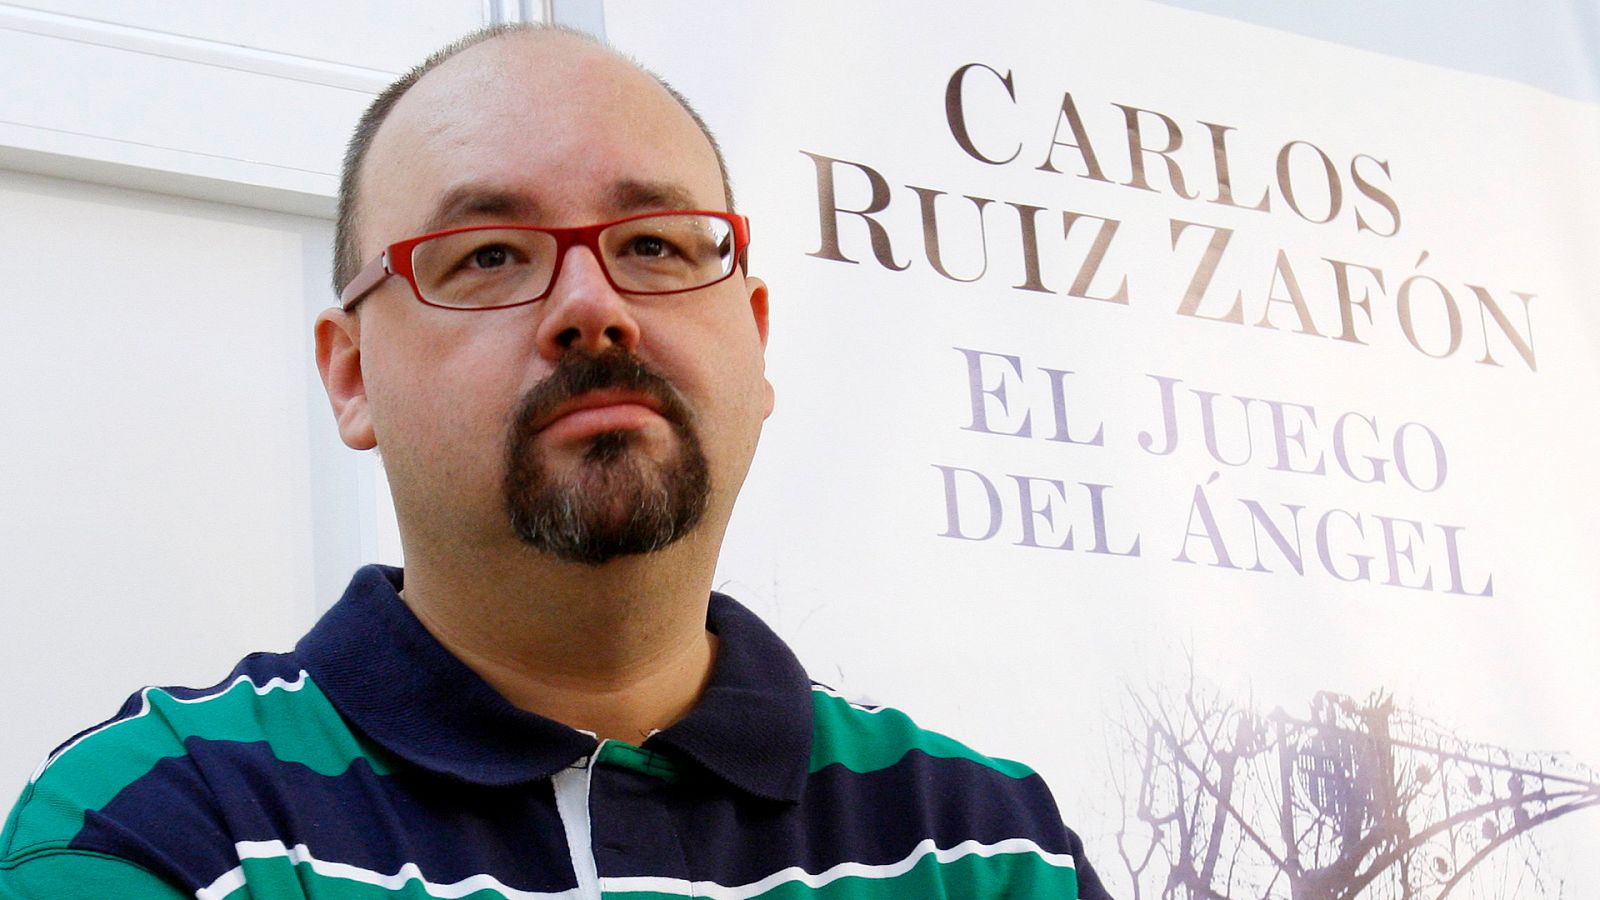 En días como hoy - Carlos Ruiz Zafón nos presenta 'El juego del ángel' - Escuchar ahora